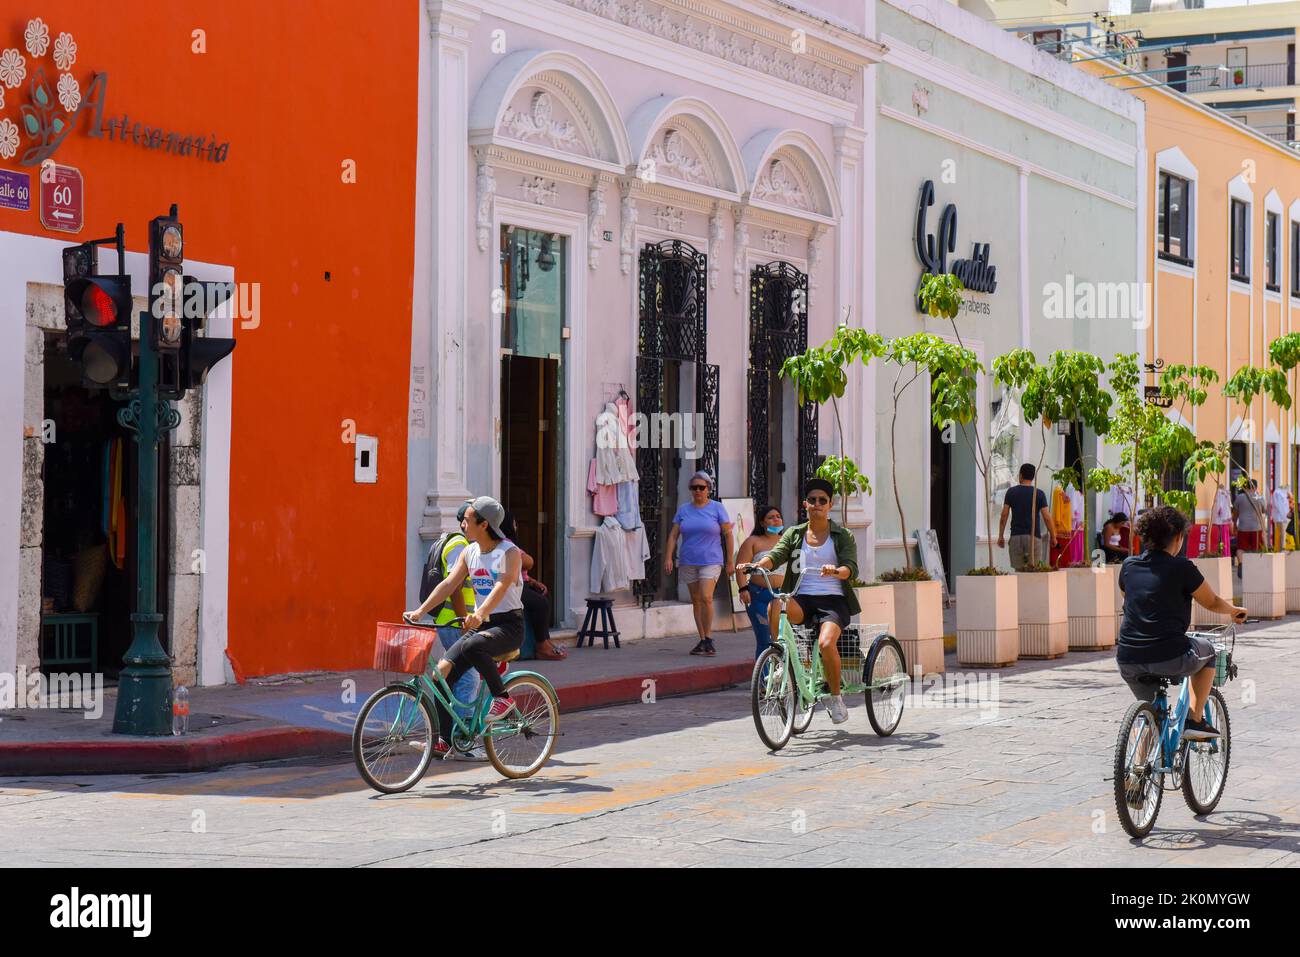 Biciruta est un événement de vélo traditionnel de la communauté du dimanche où la ville ferme quelques rues dans le centre historique pour permettre aux gens de faire du vélo et de profiter des activités de plein air, Merida, Yucatan, Mexique Banque D'Images